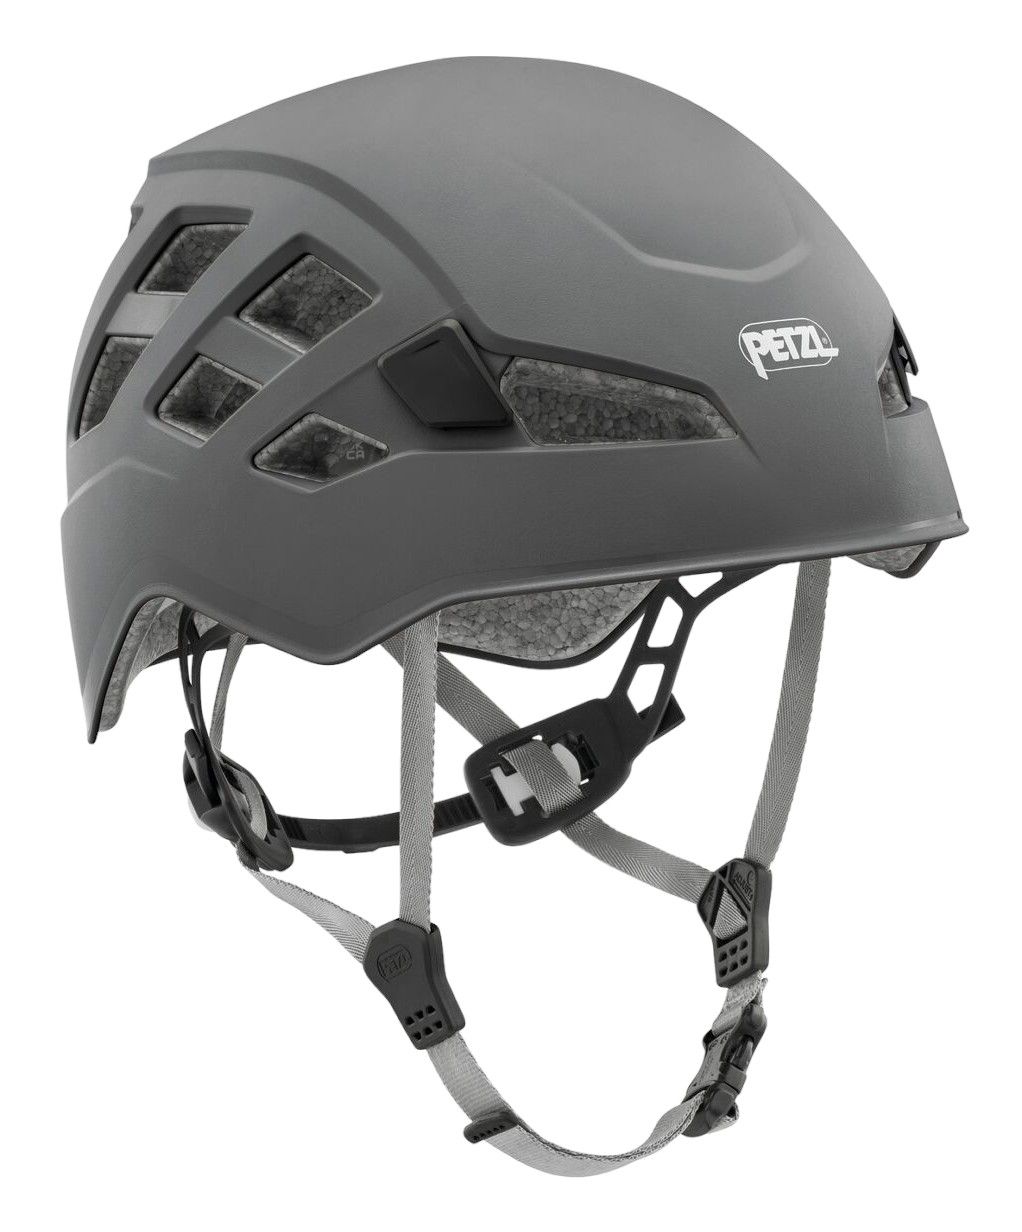 Photos - Protective Gear Set Petzl Boreo Helmet, Men's, Medium/Large, Grey 23PETABRHLMTS23XXCAC 